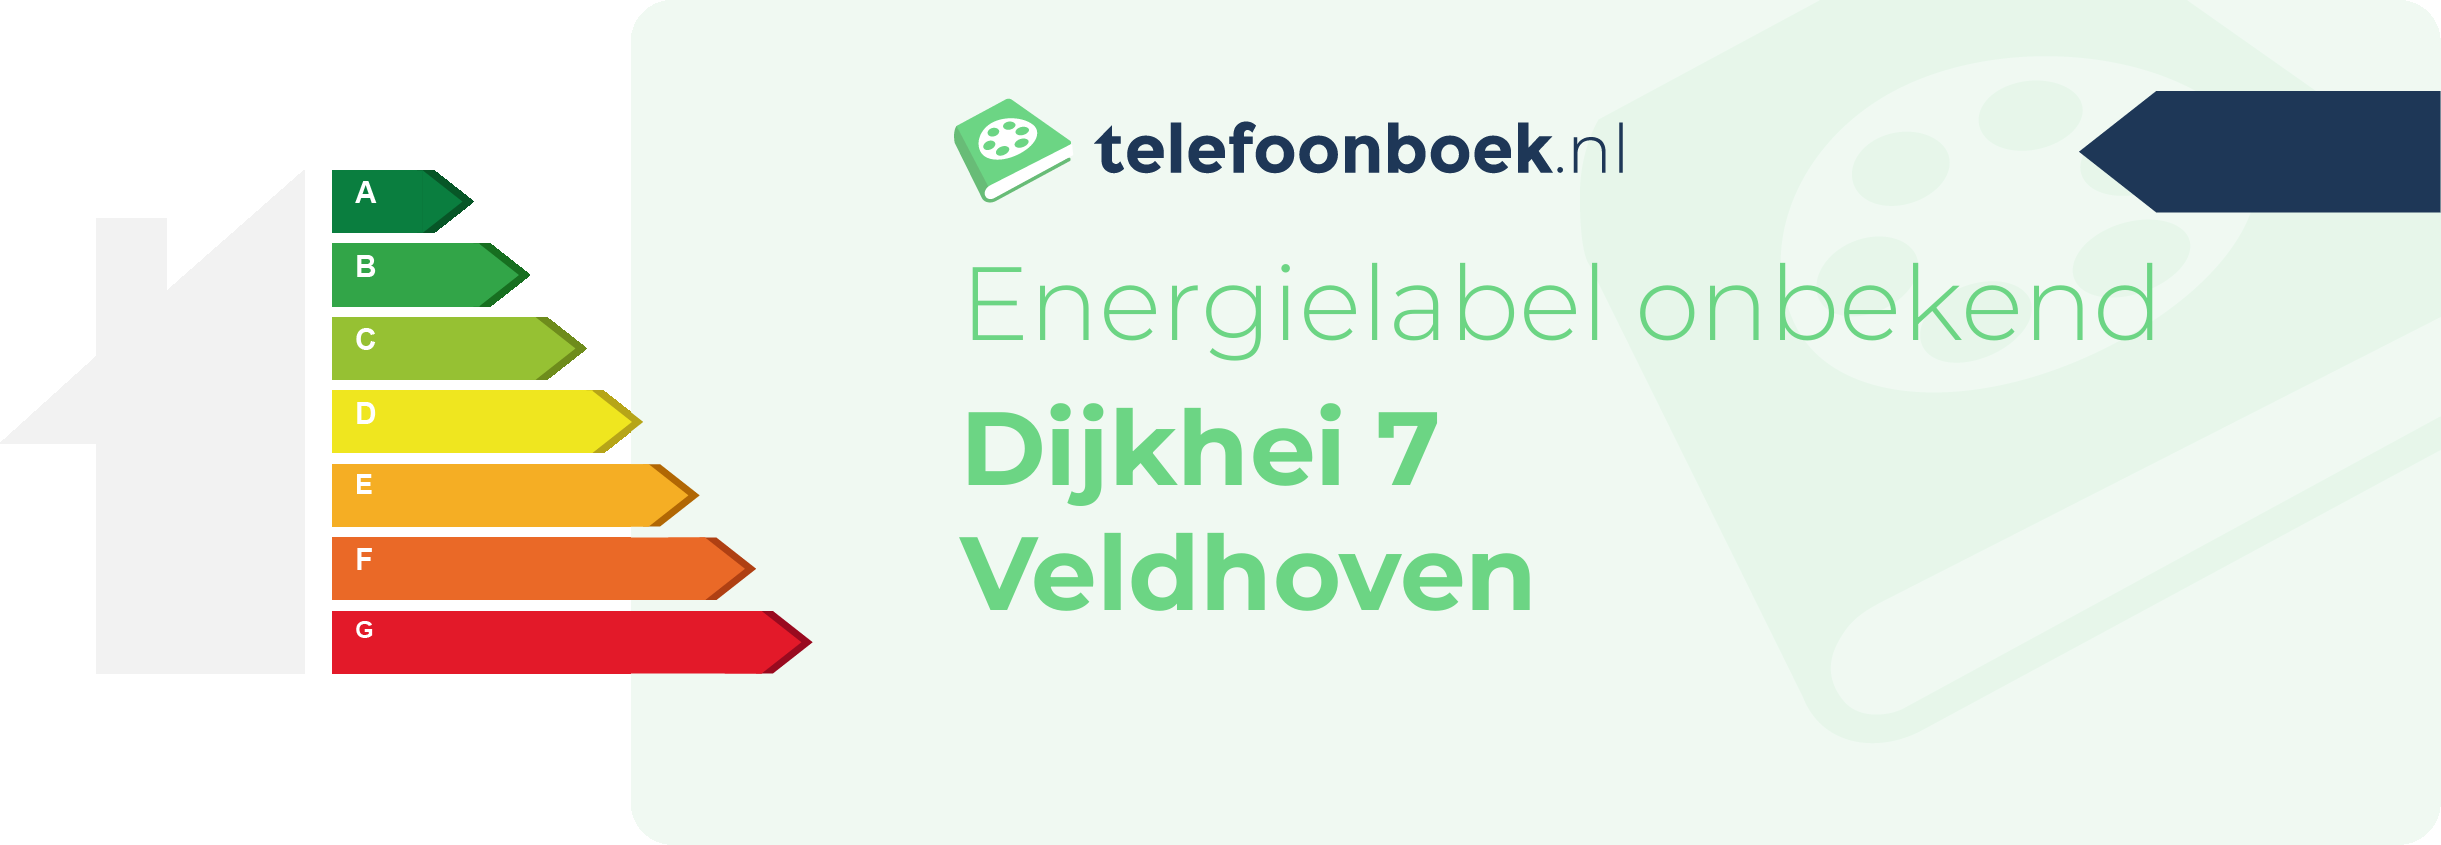 Energielabel Dijkhei 7 Veldhoven